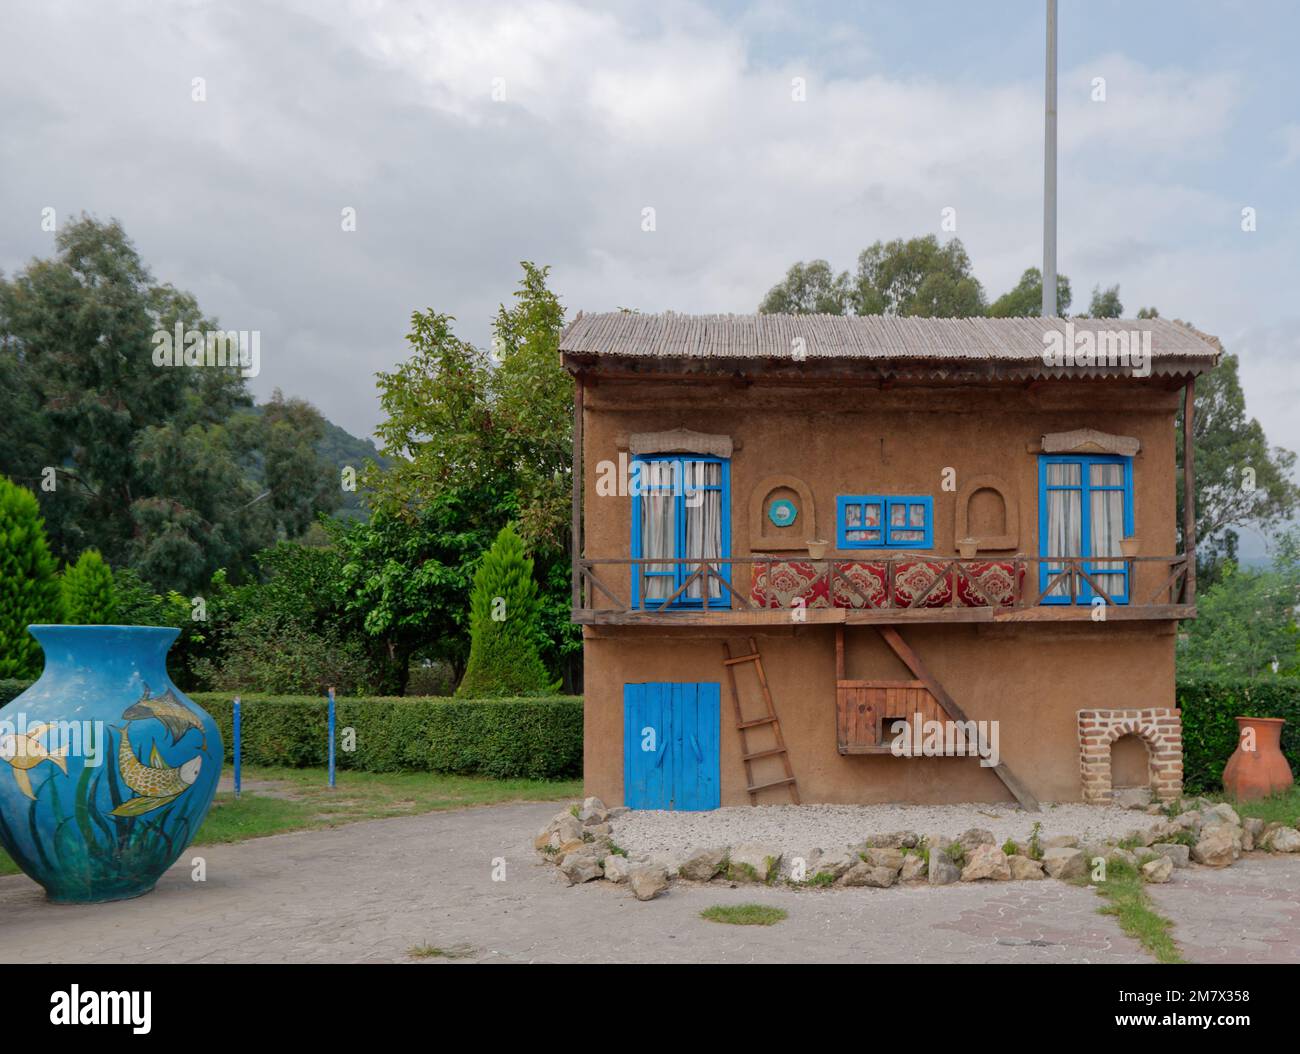 Vue de face de l'ancien Hôtel Ramsar de la province de Mazandaran, Iran Banque D'Images